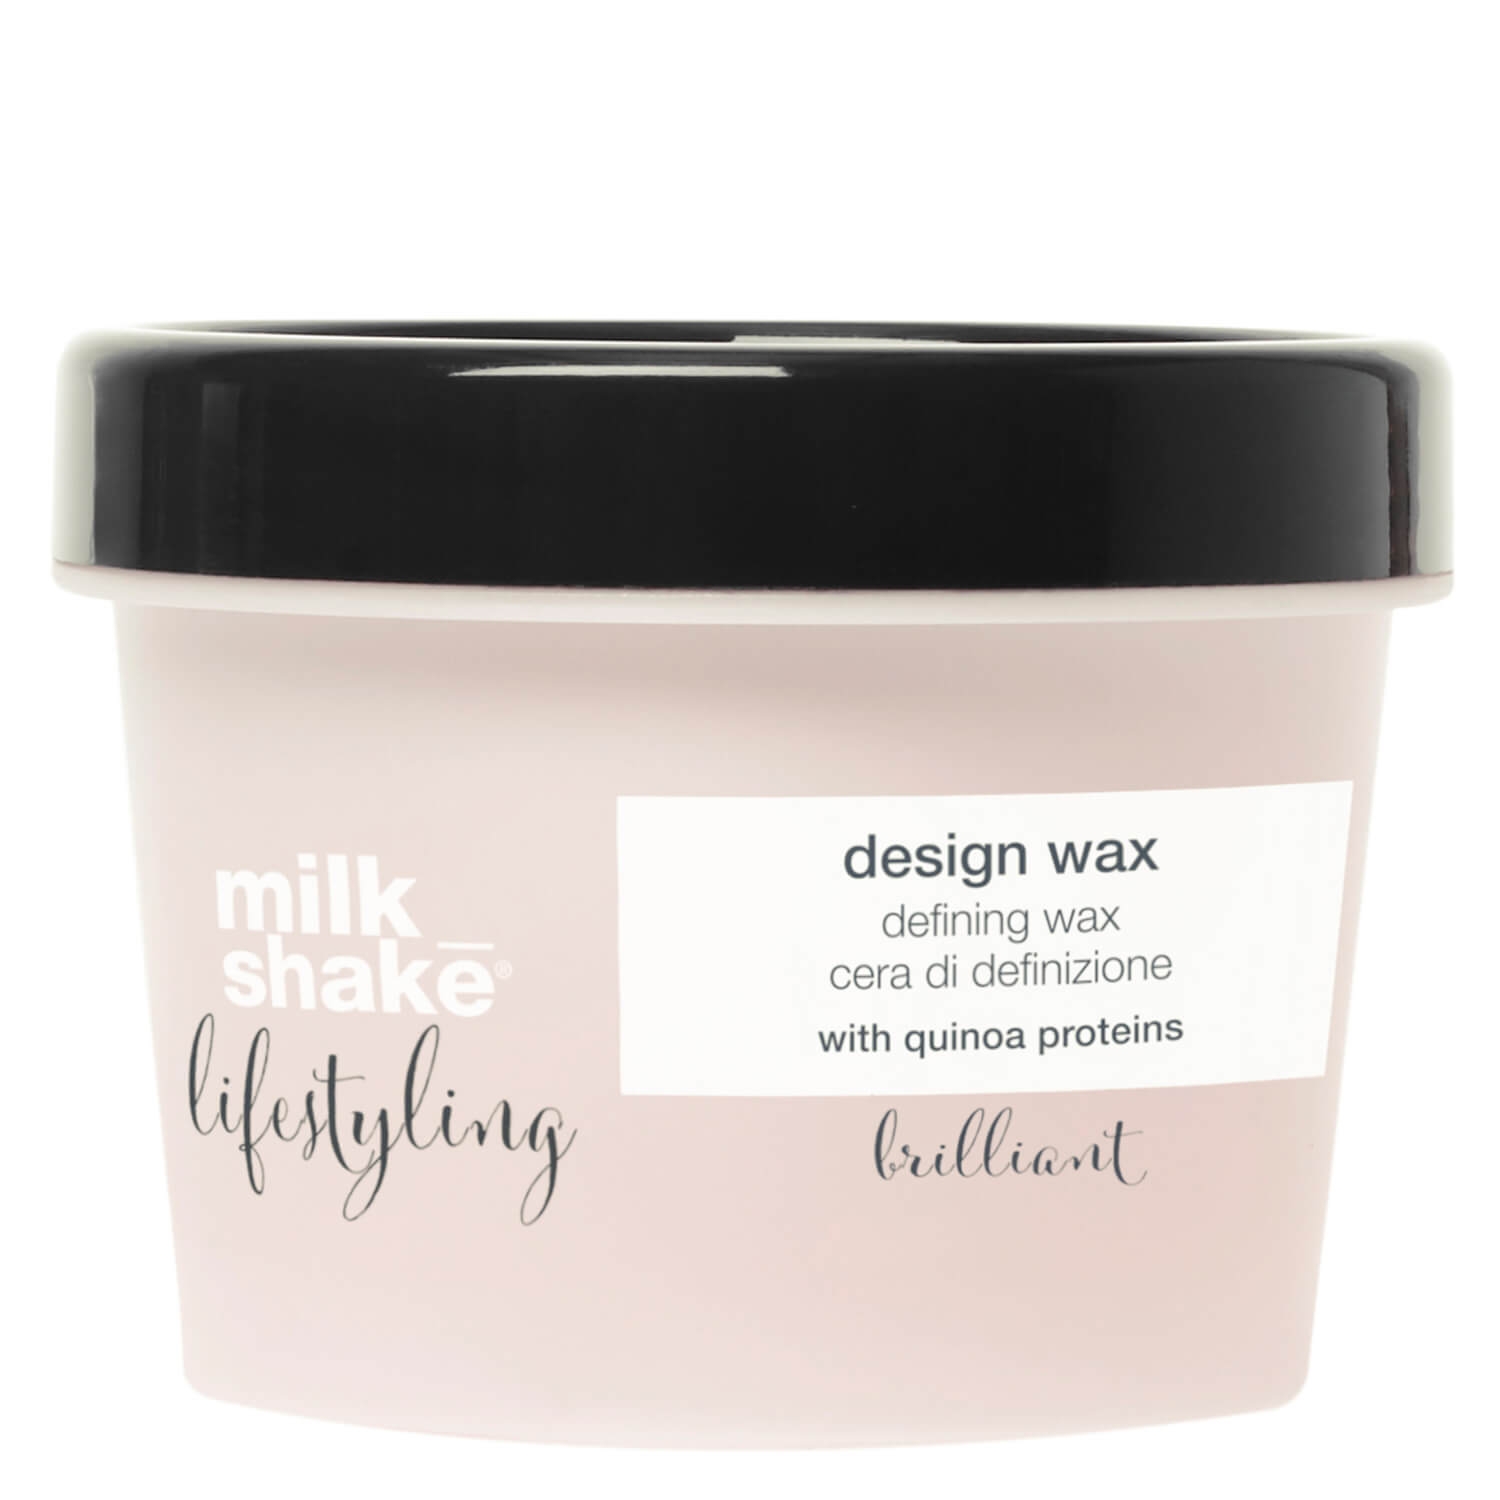 Produktbild von milk_shake lifestyling - design wax